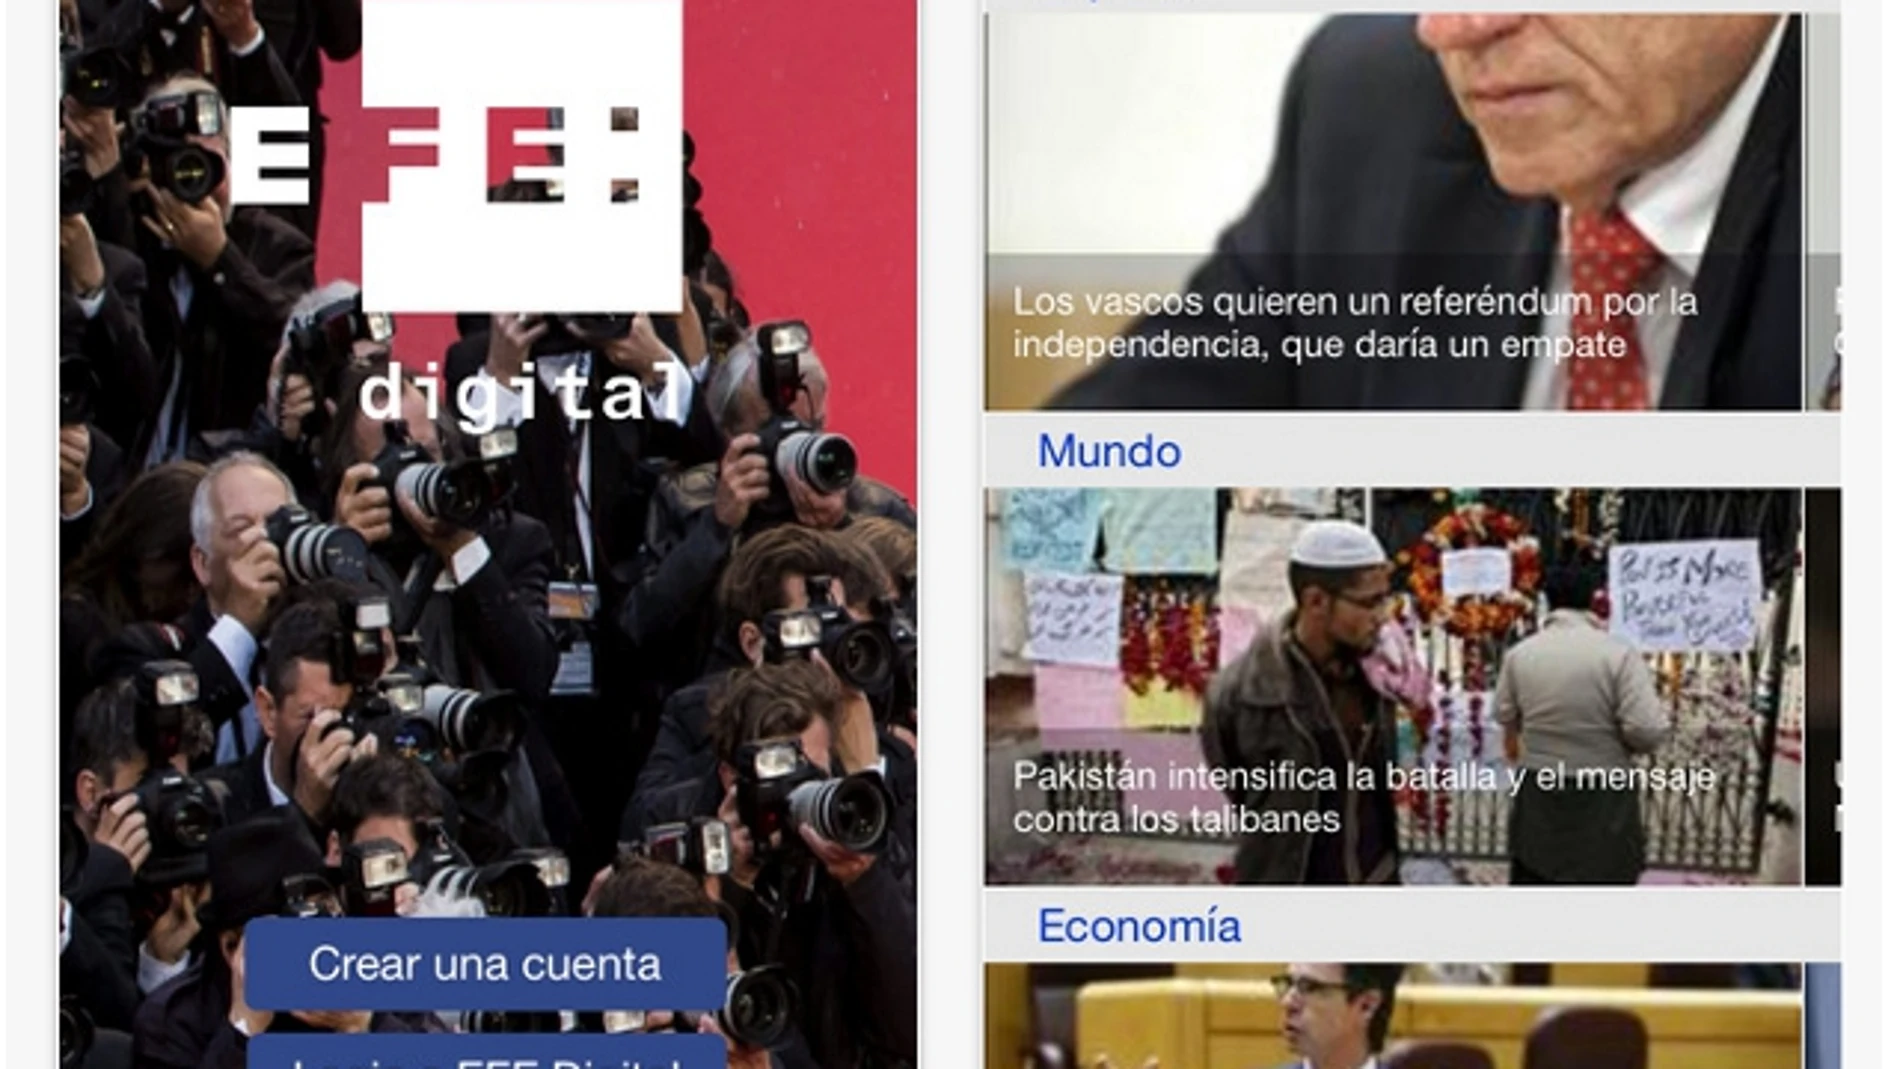 «EFE Digital», una nueva app para mantenerse informado